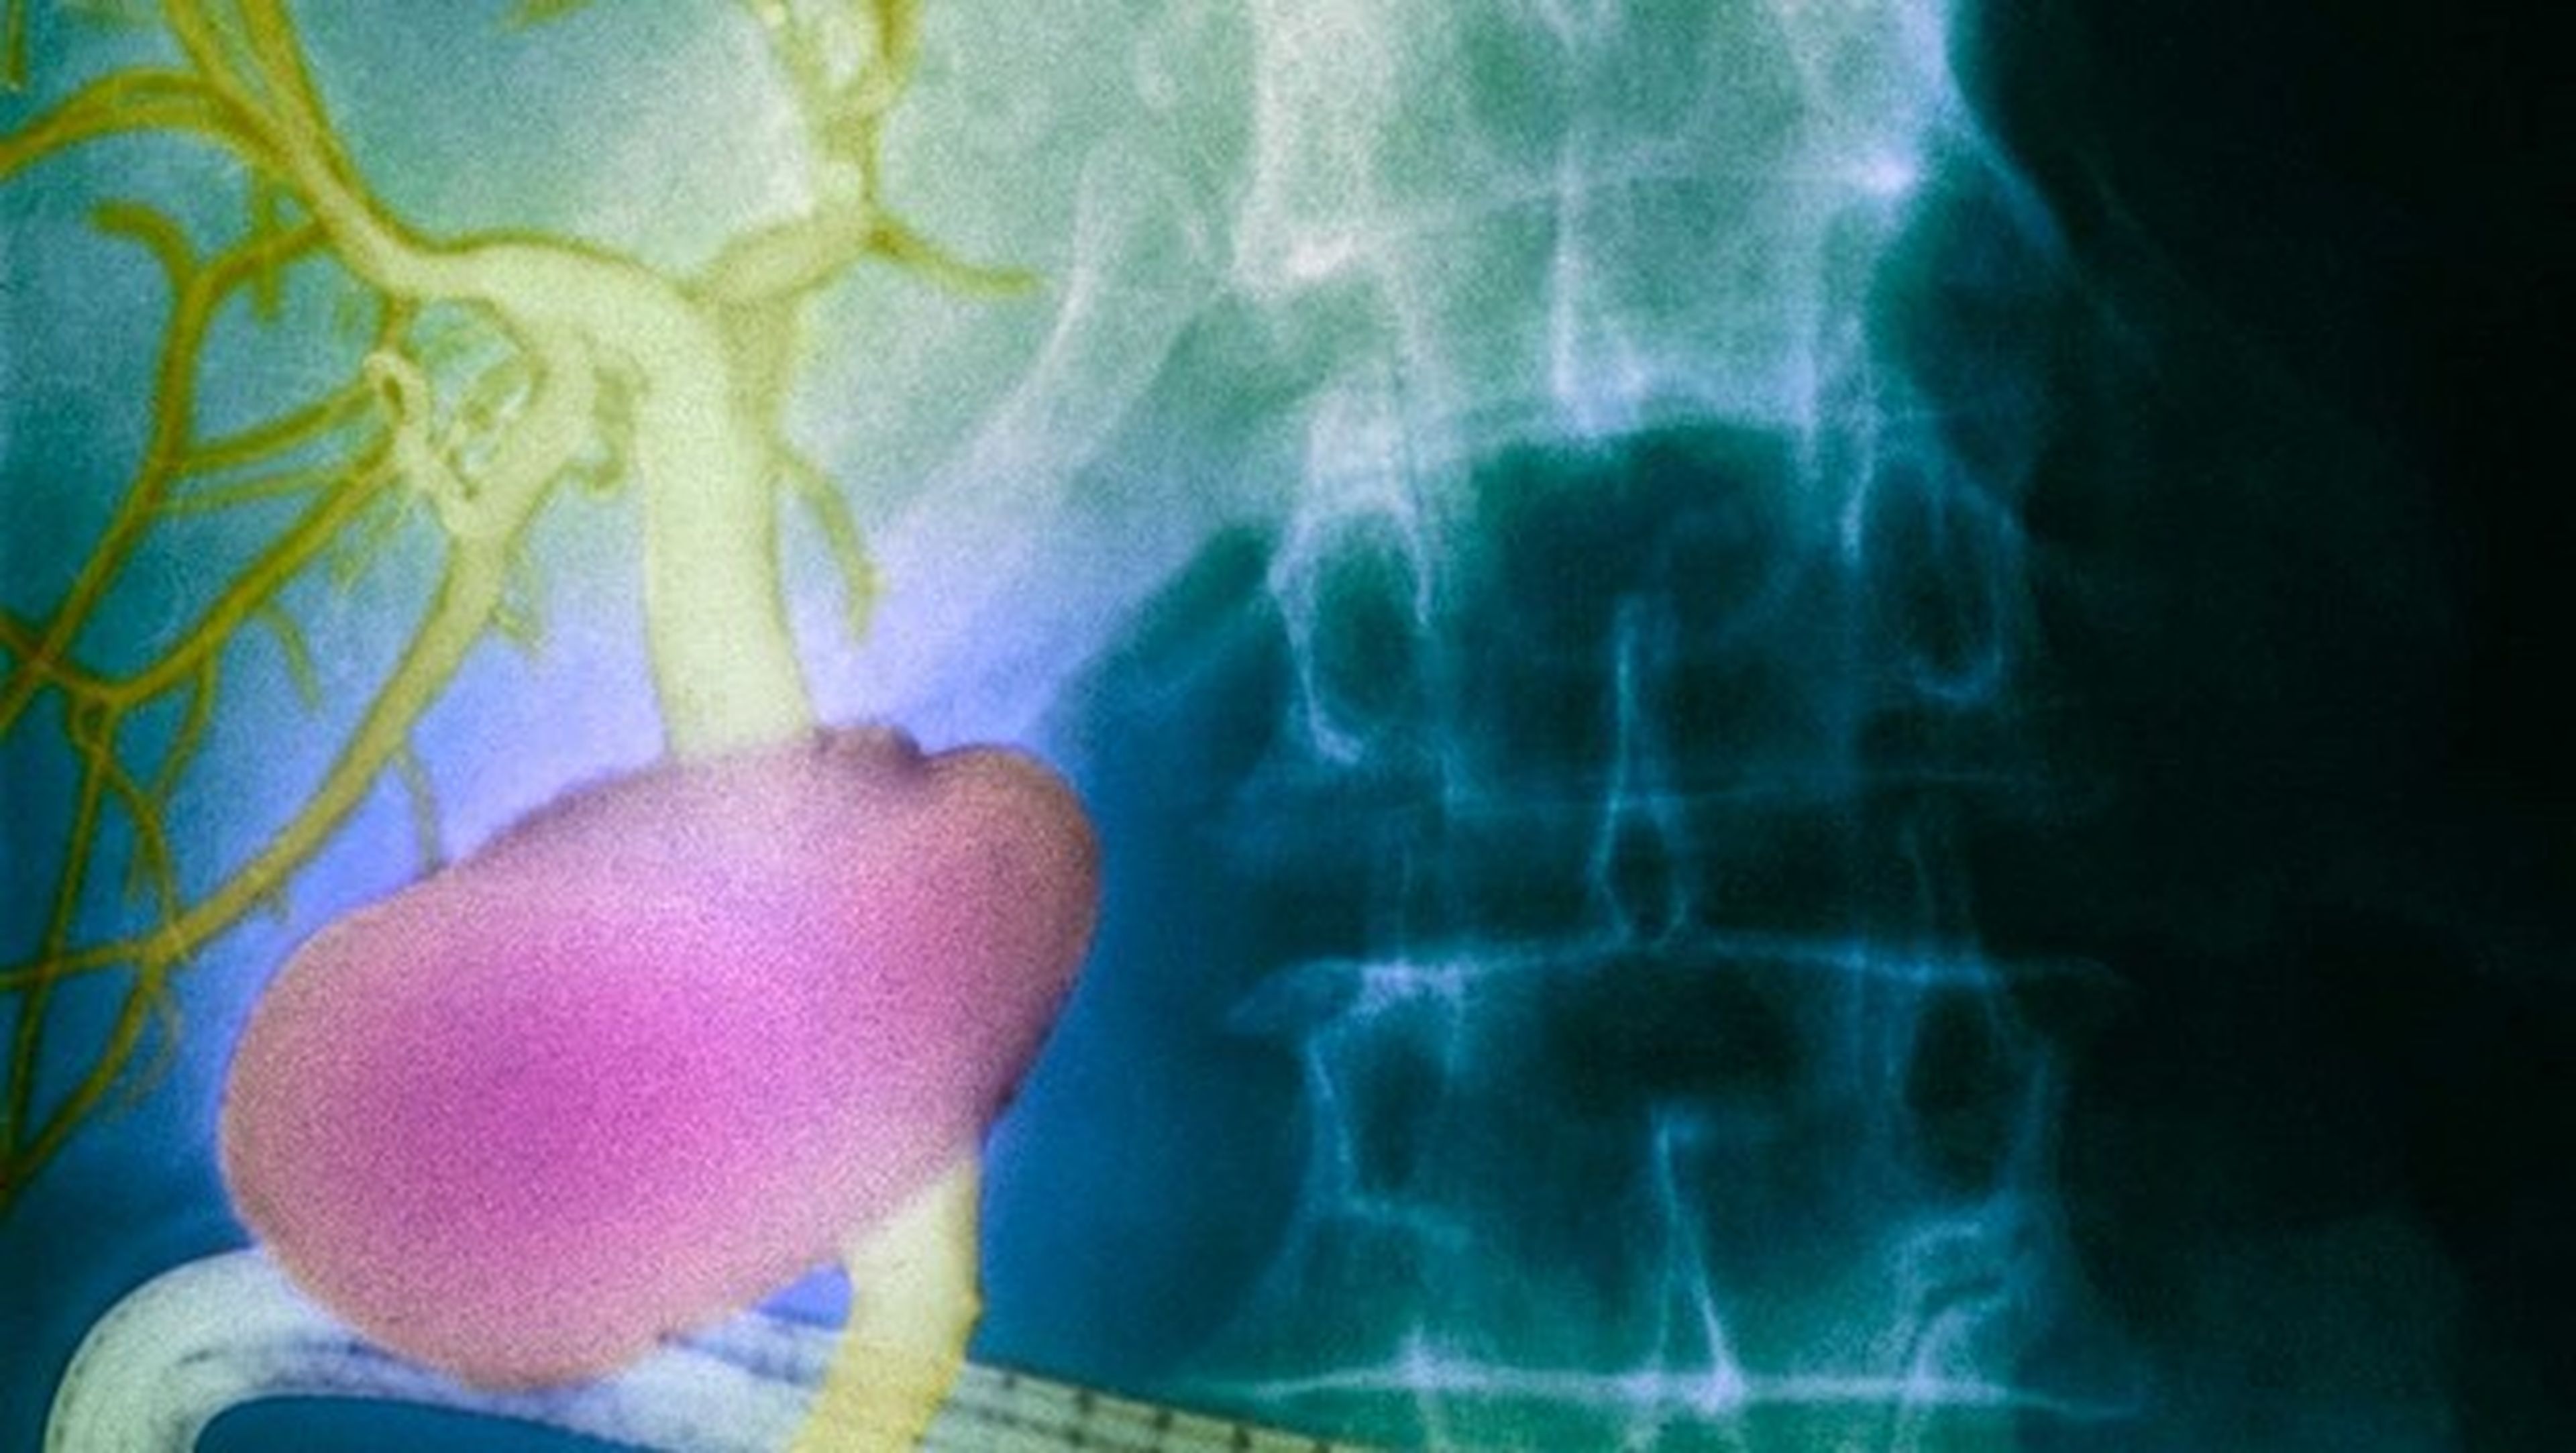 Descubren un nuevo órgano en el cuerpo humano asociado al cáncer